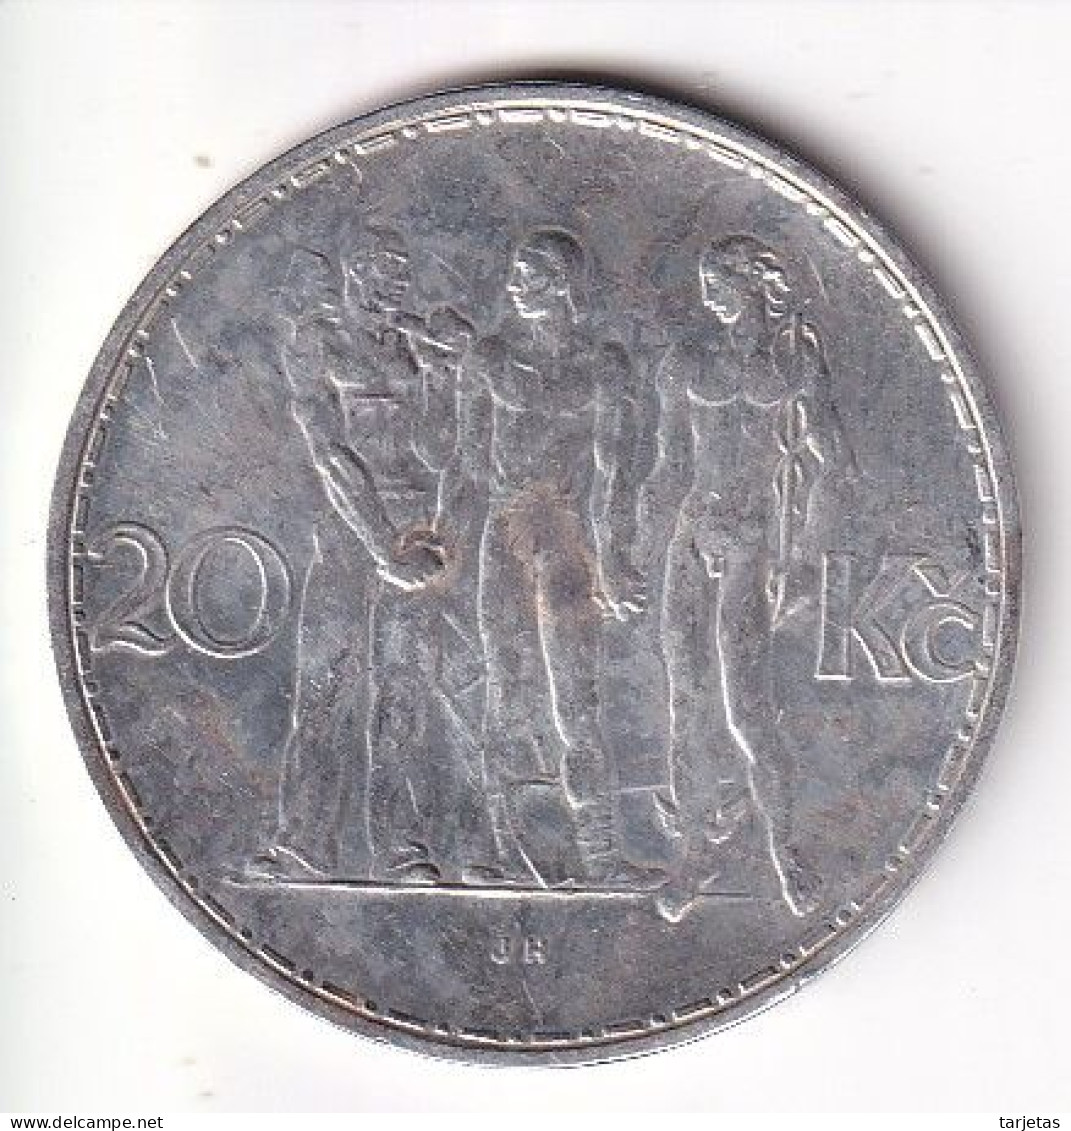 MONEDA DE PLATA DE CHECOSLOVAQUIA DE 20 KORUN DEL AÑO 1933 (COIN) SILVER-ARGENT - Czechoslovakia